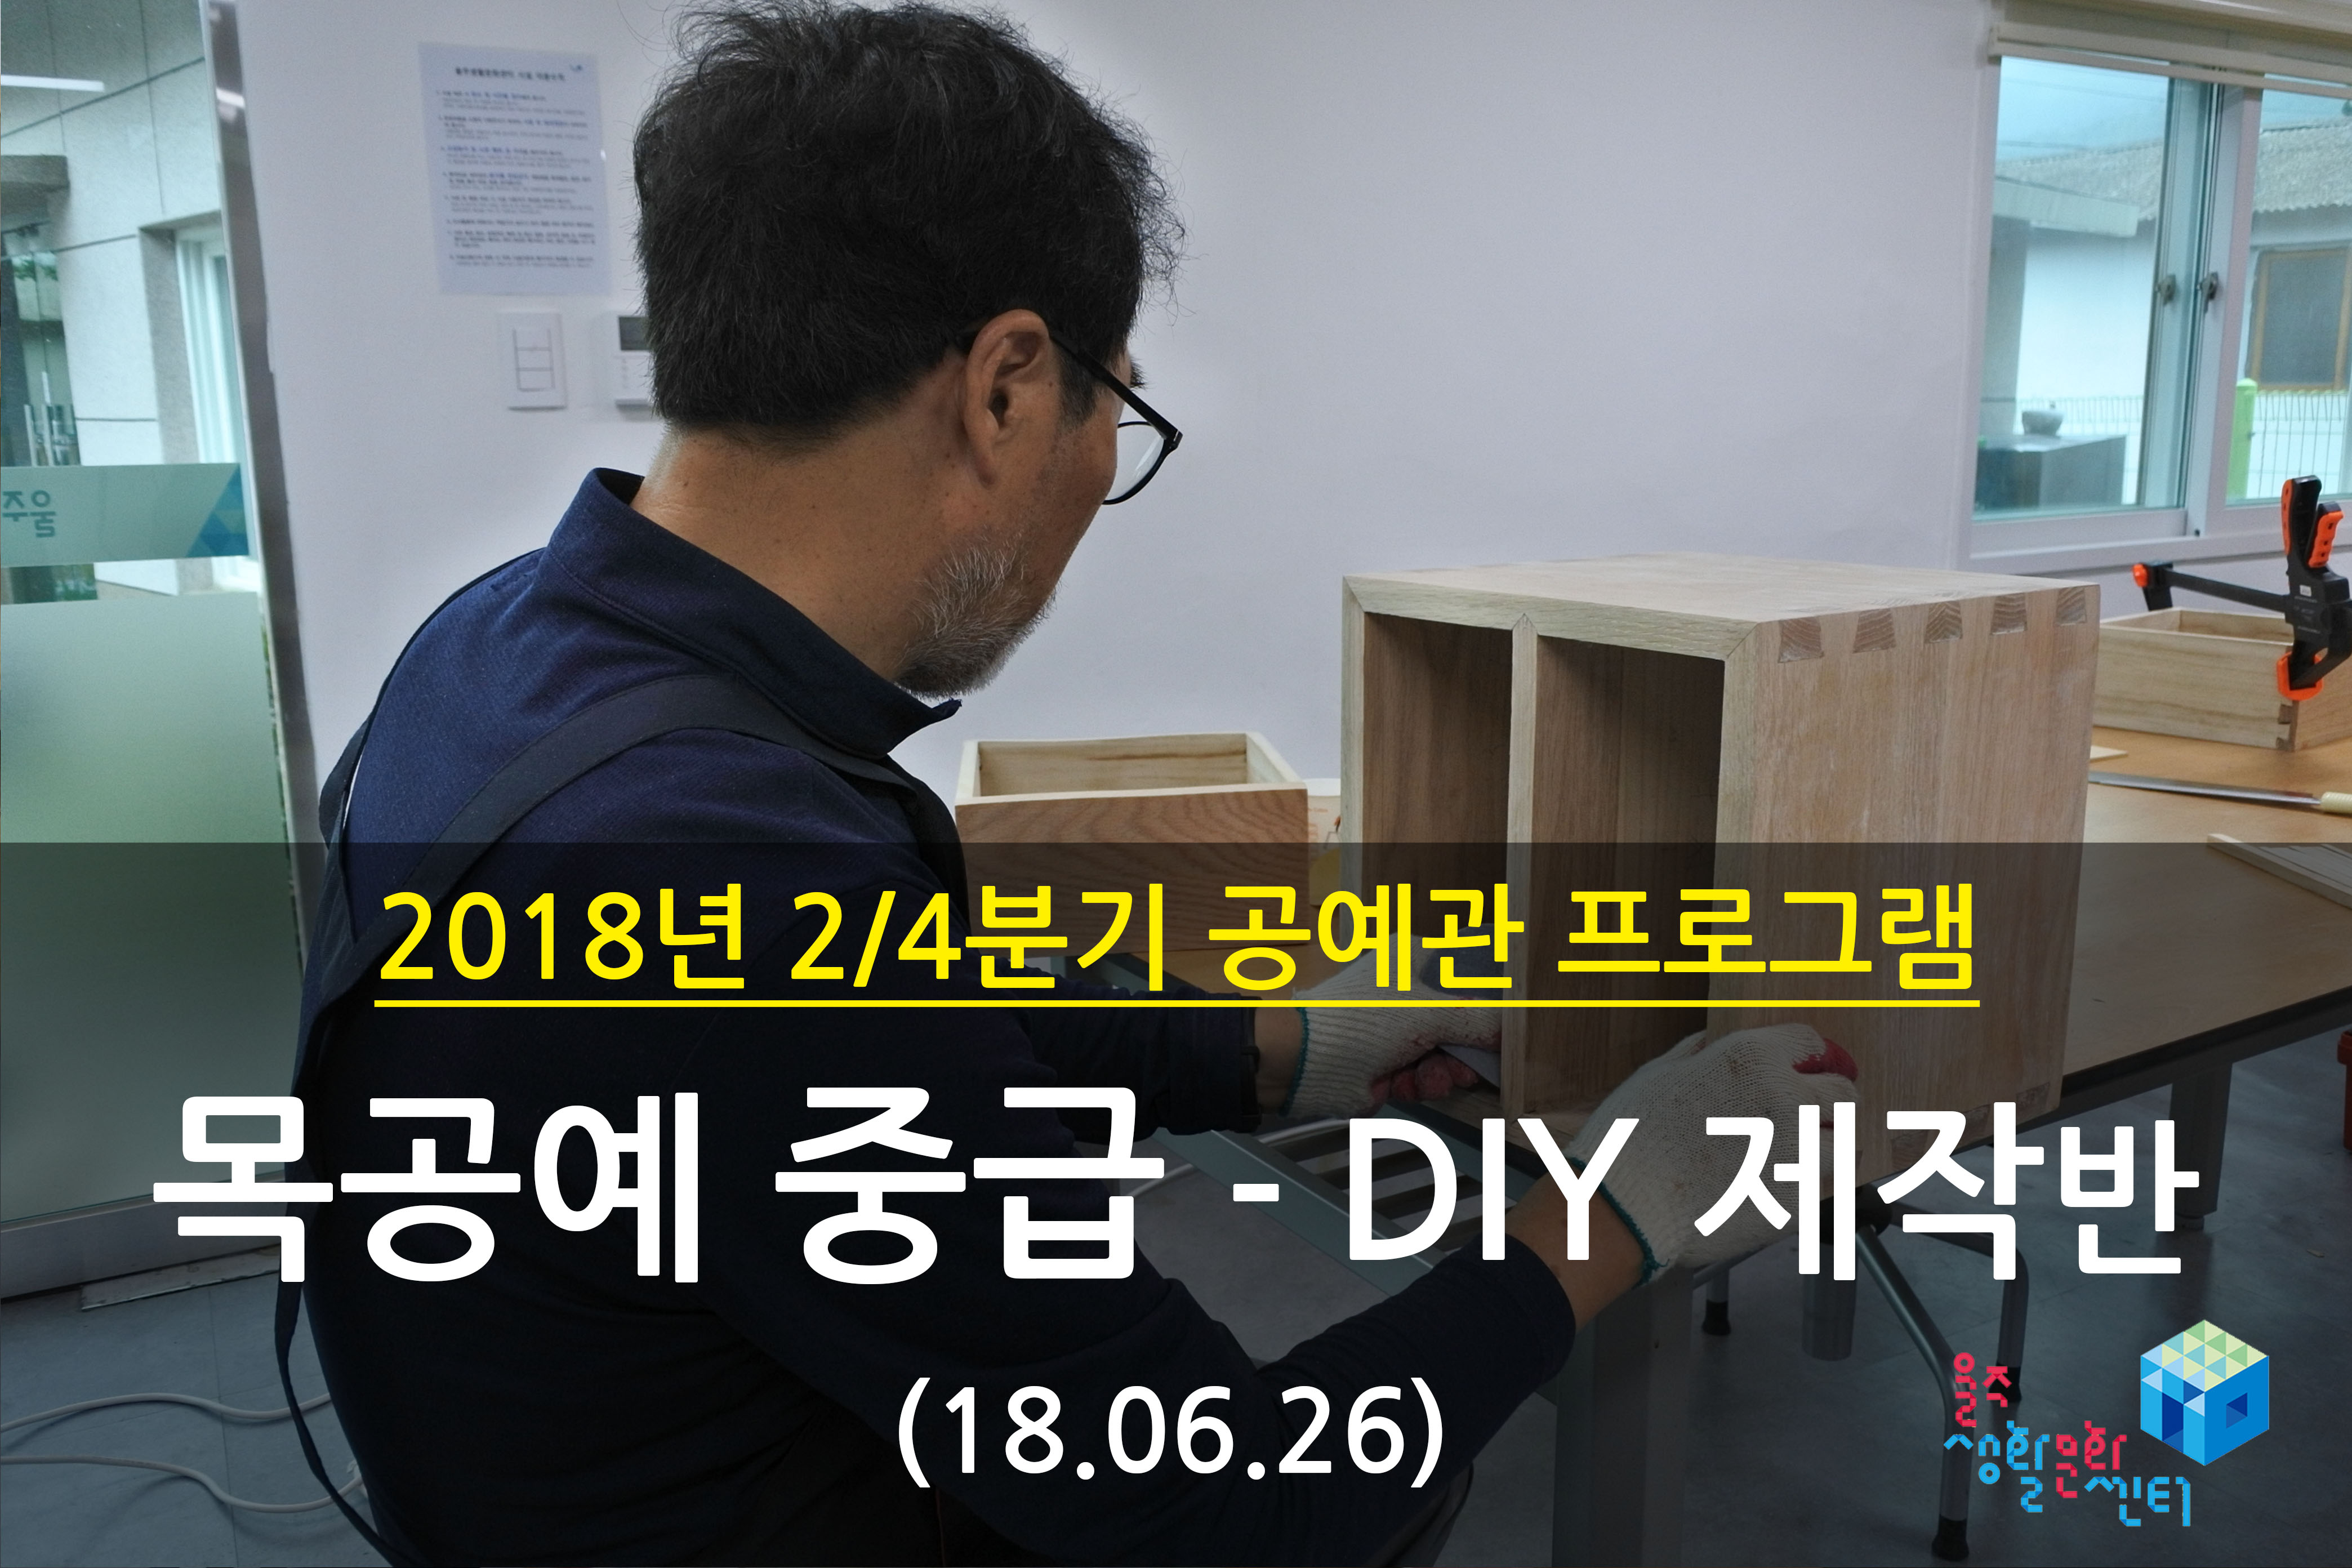 2018.06.26 _ 목공예 중급 - DIY 제작반 _ 2/4분기 12주차 수업